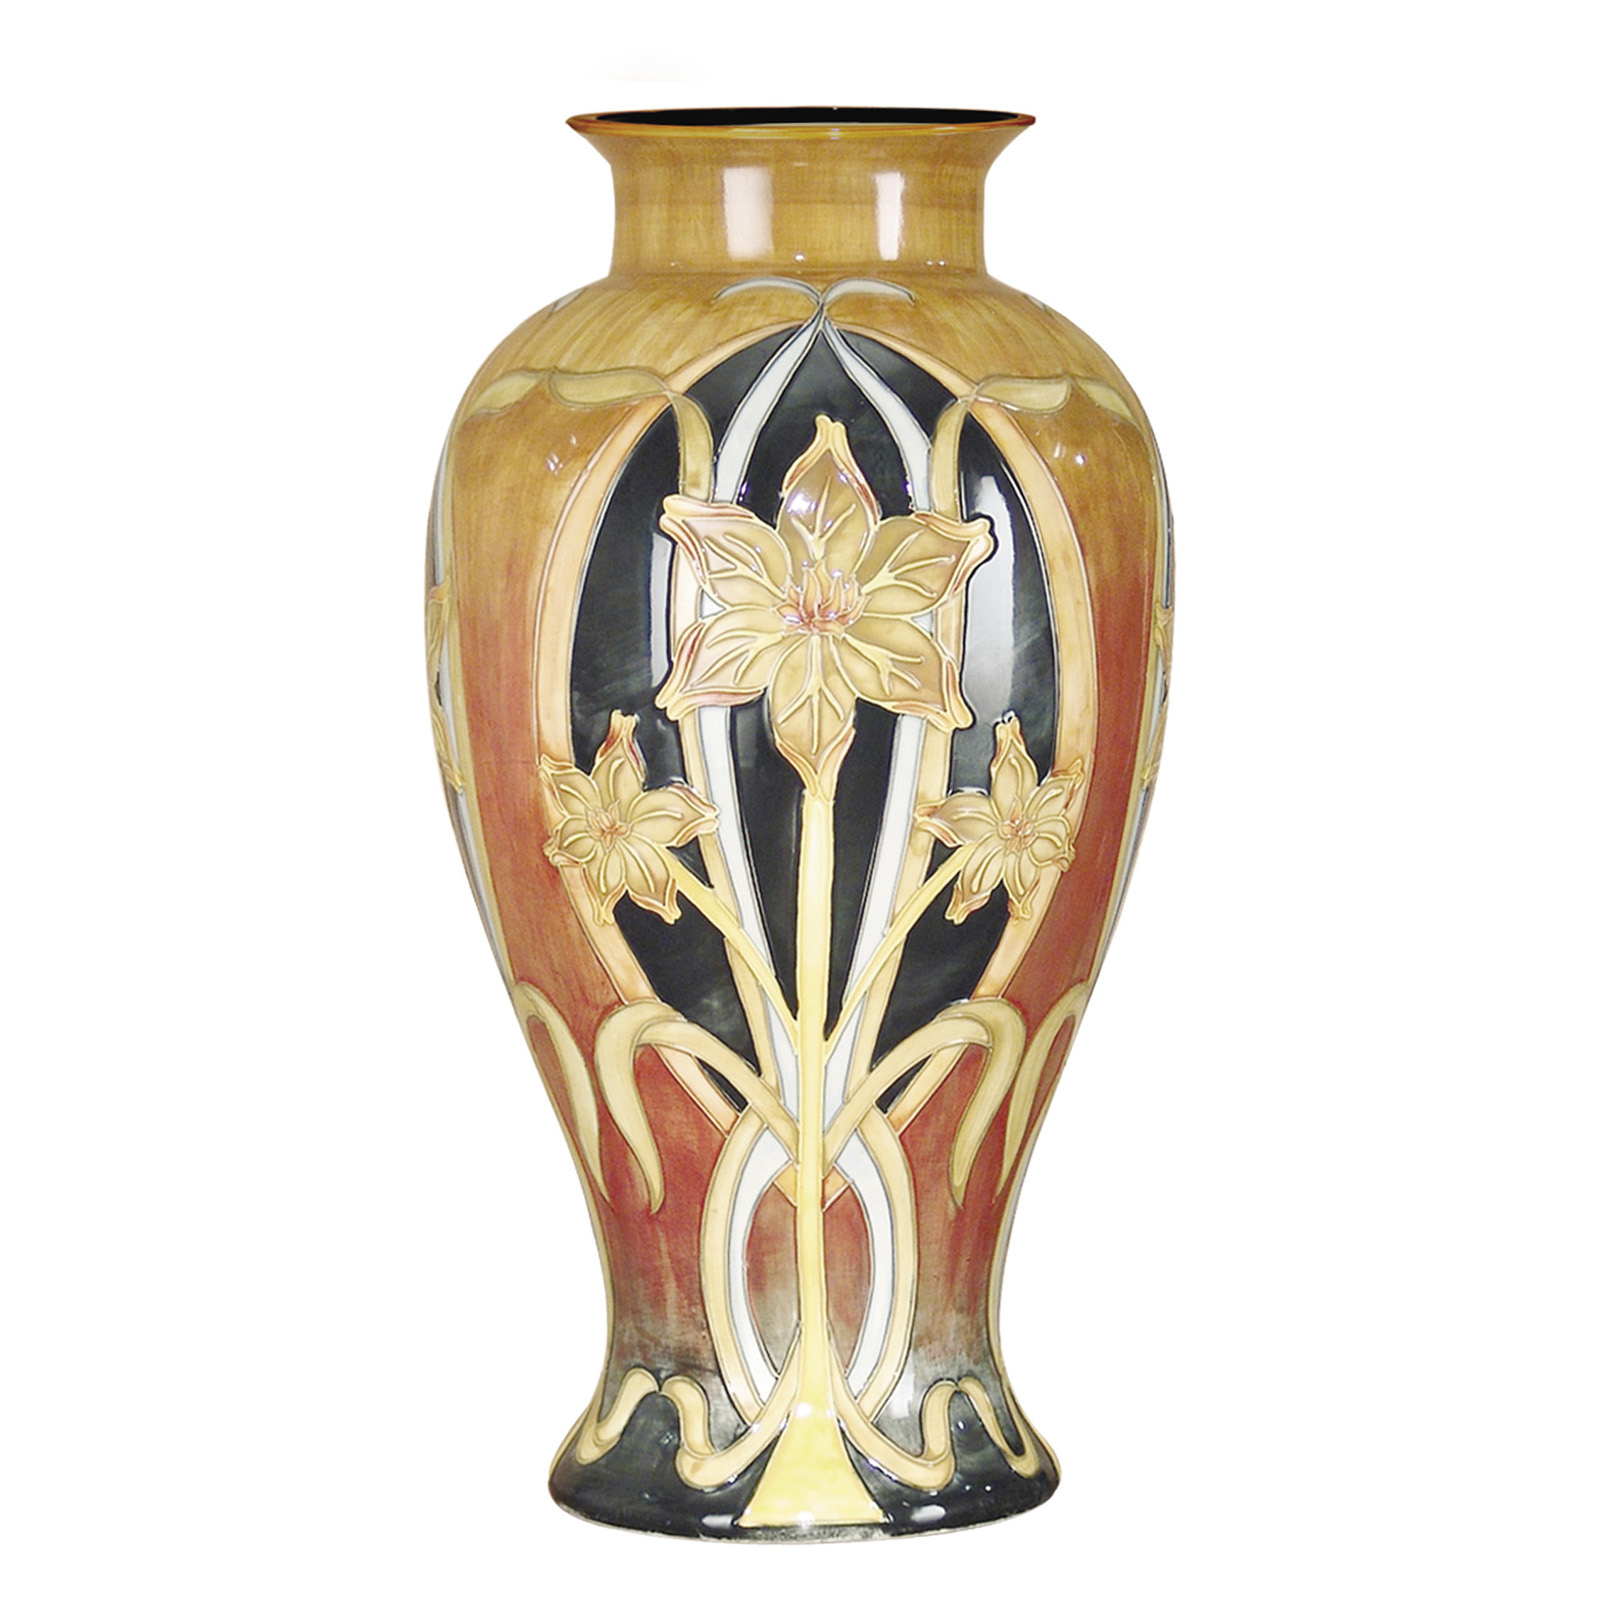 Pasque Flower Vase